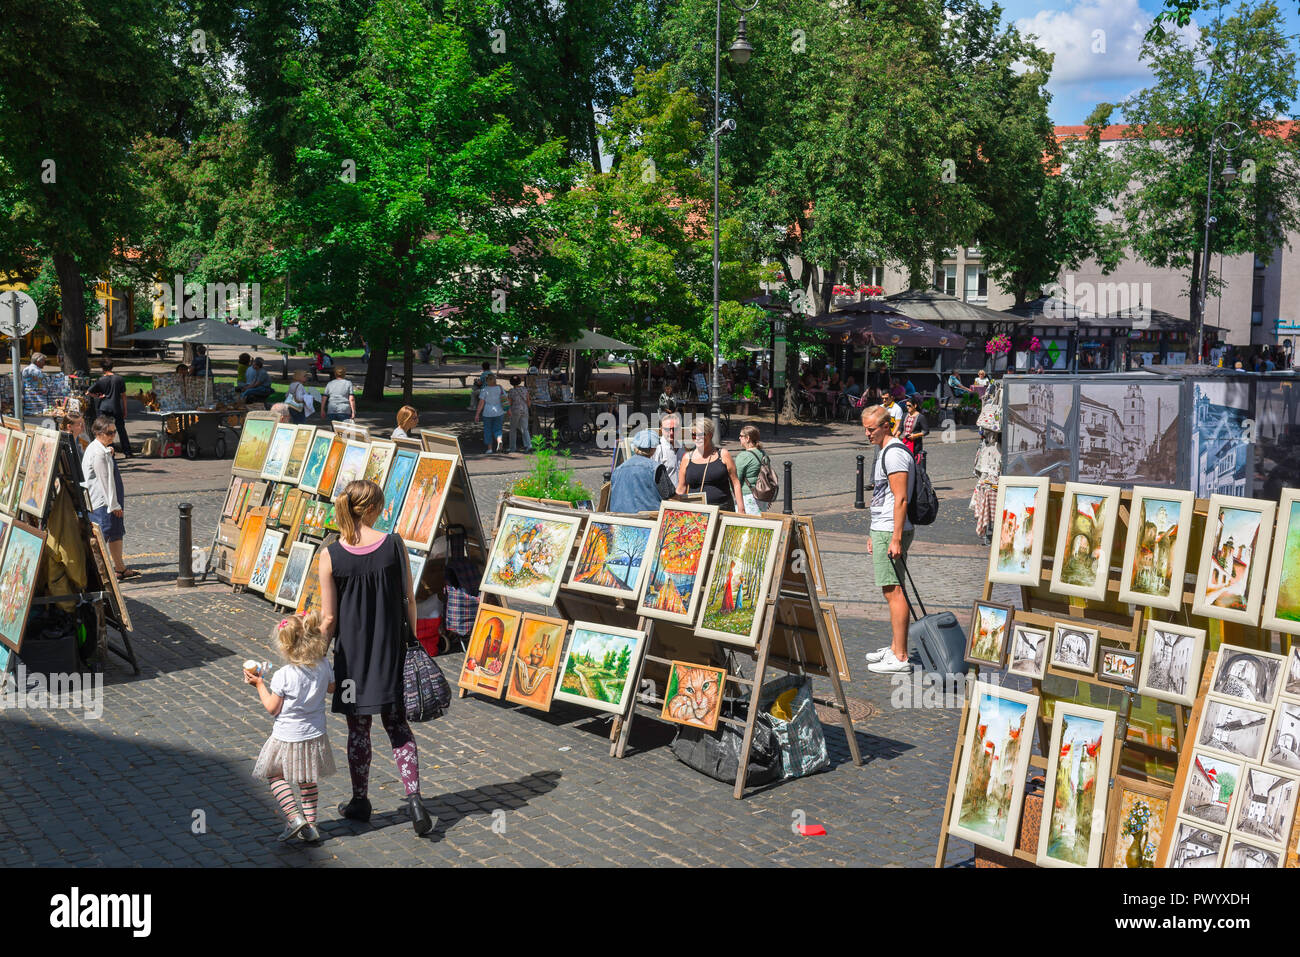 Rue de vente d'art, les gens de la vieille ville de Vilnius regardent une exposition de peintures d'artistes locaux à vendre, Vilnius, Lituanie. Banque D'Images